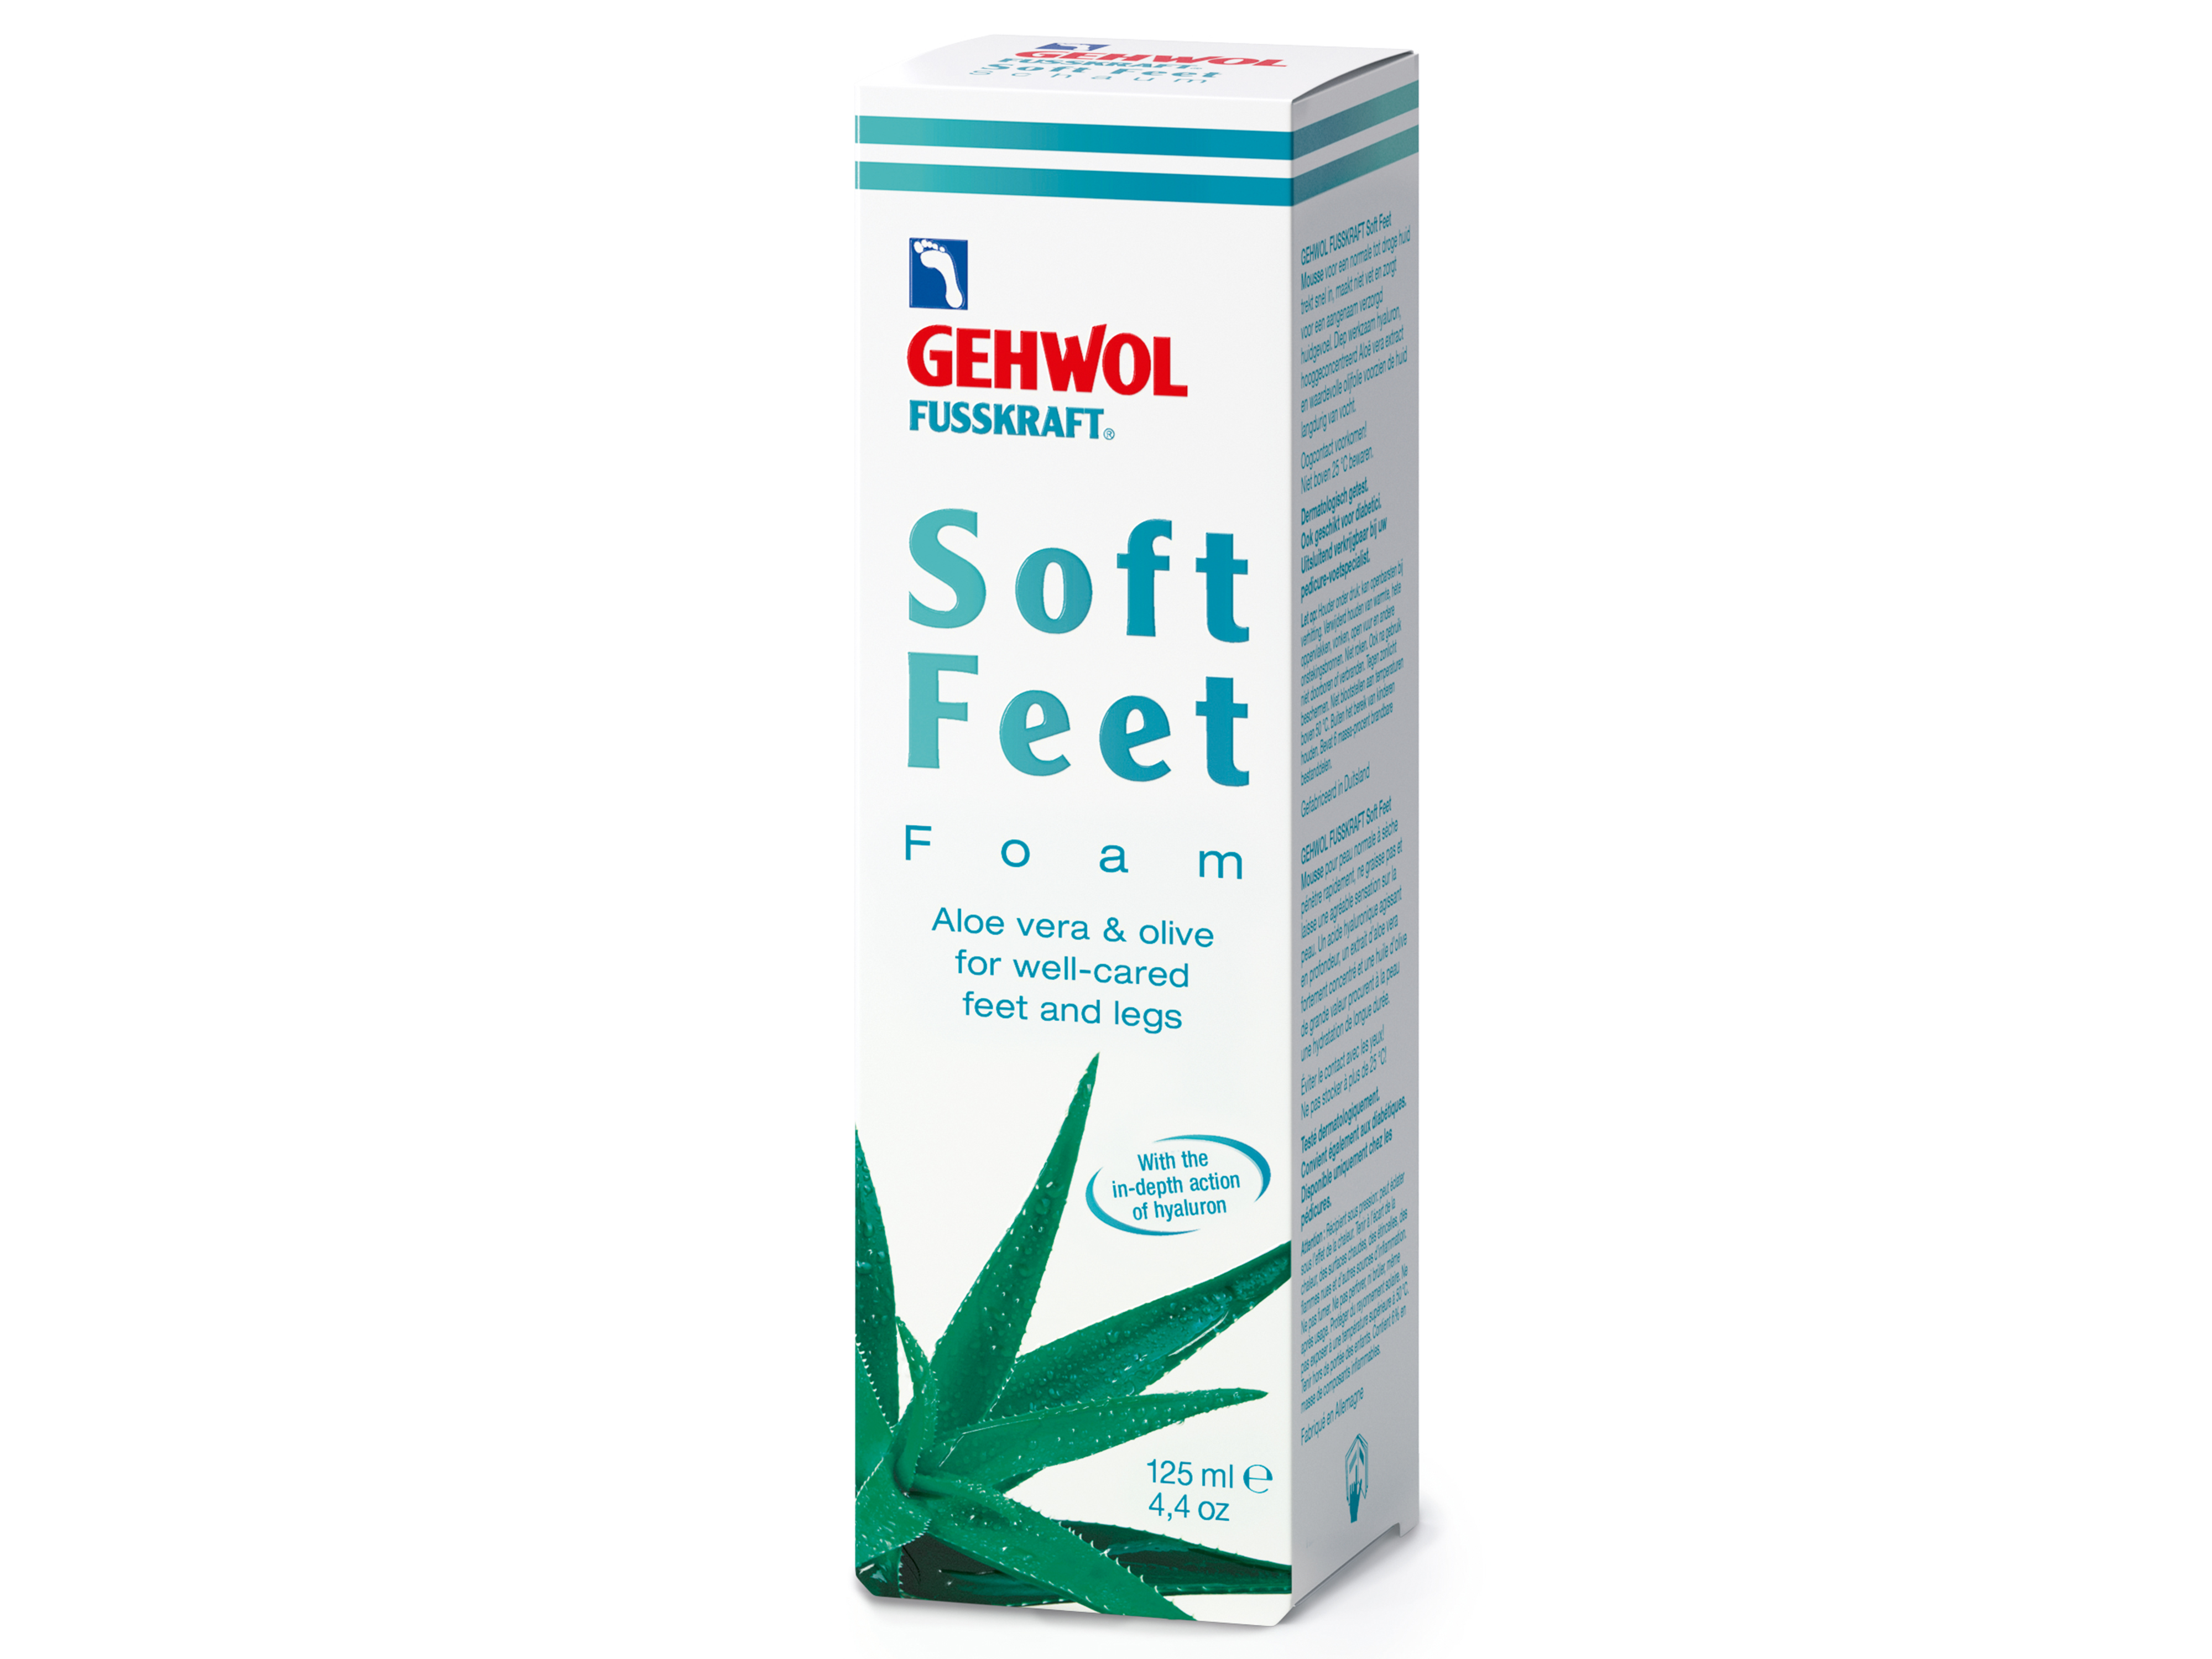 Gehwol Fusskraft Soft Feet Foam, 125 ml